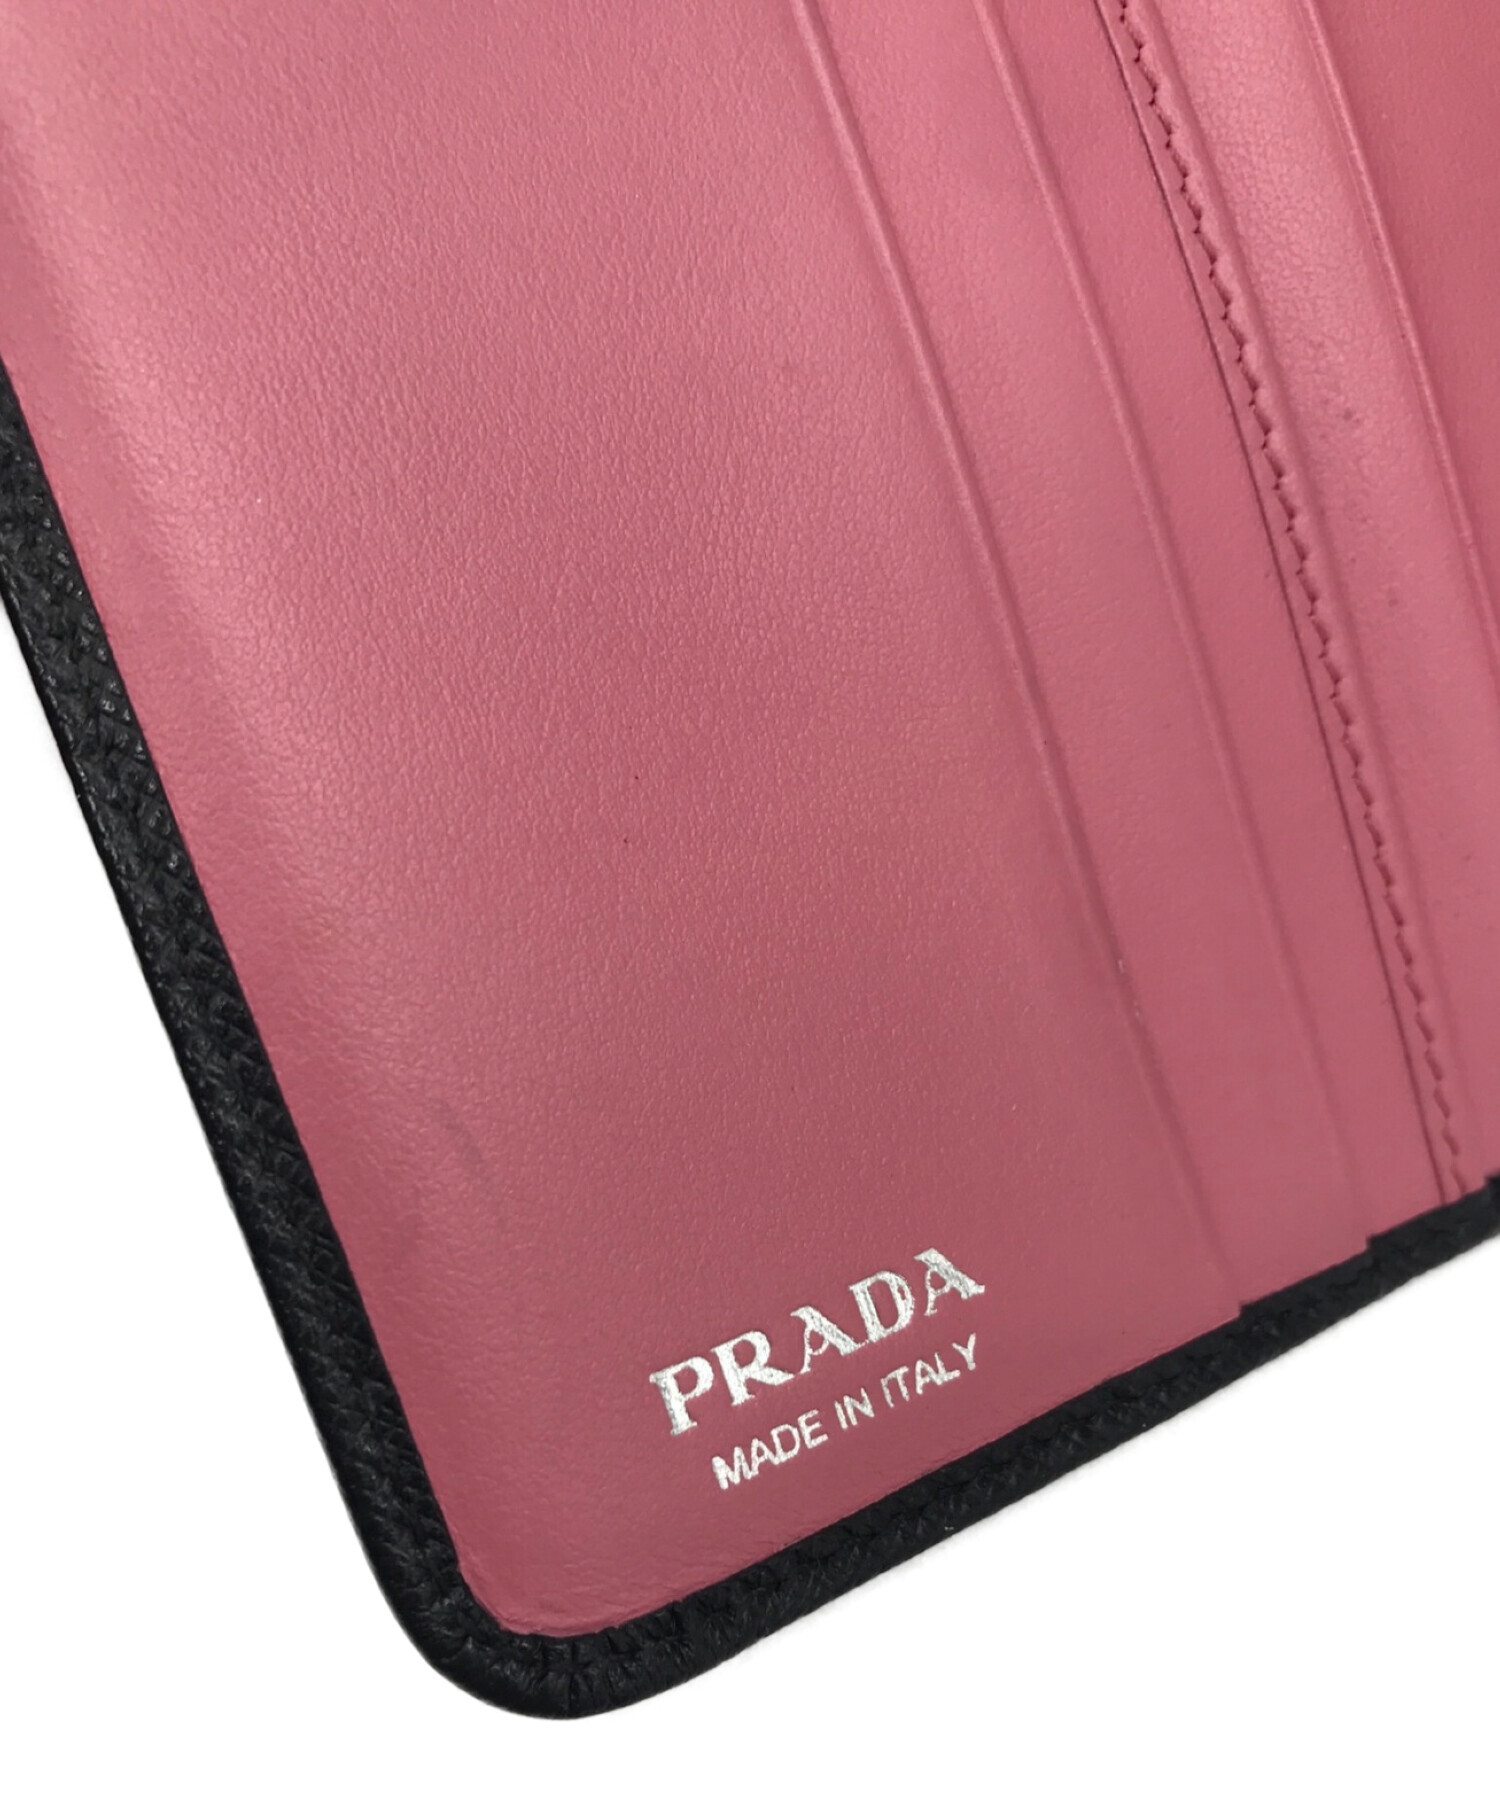 中古・古着通販】PRADA (プラダ) 2つ折り財布 ブラック×ピンク サイズ 